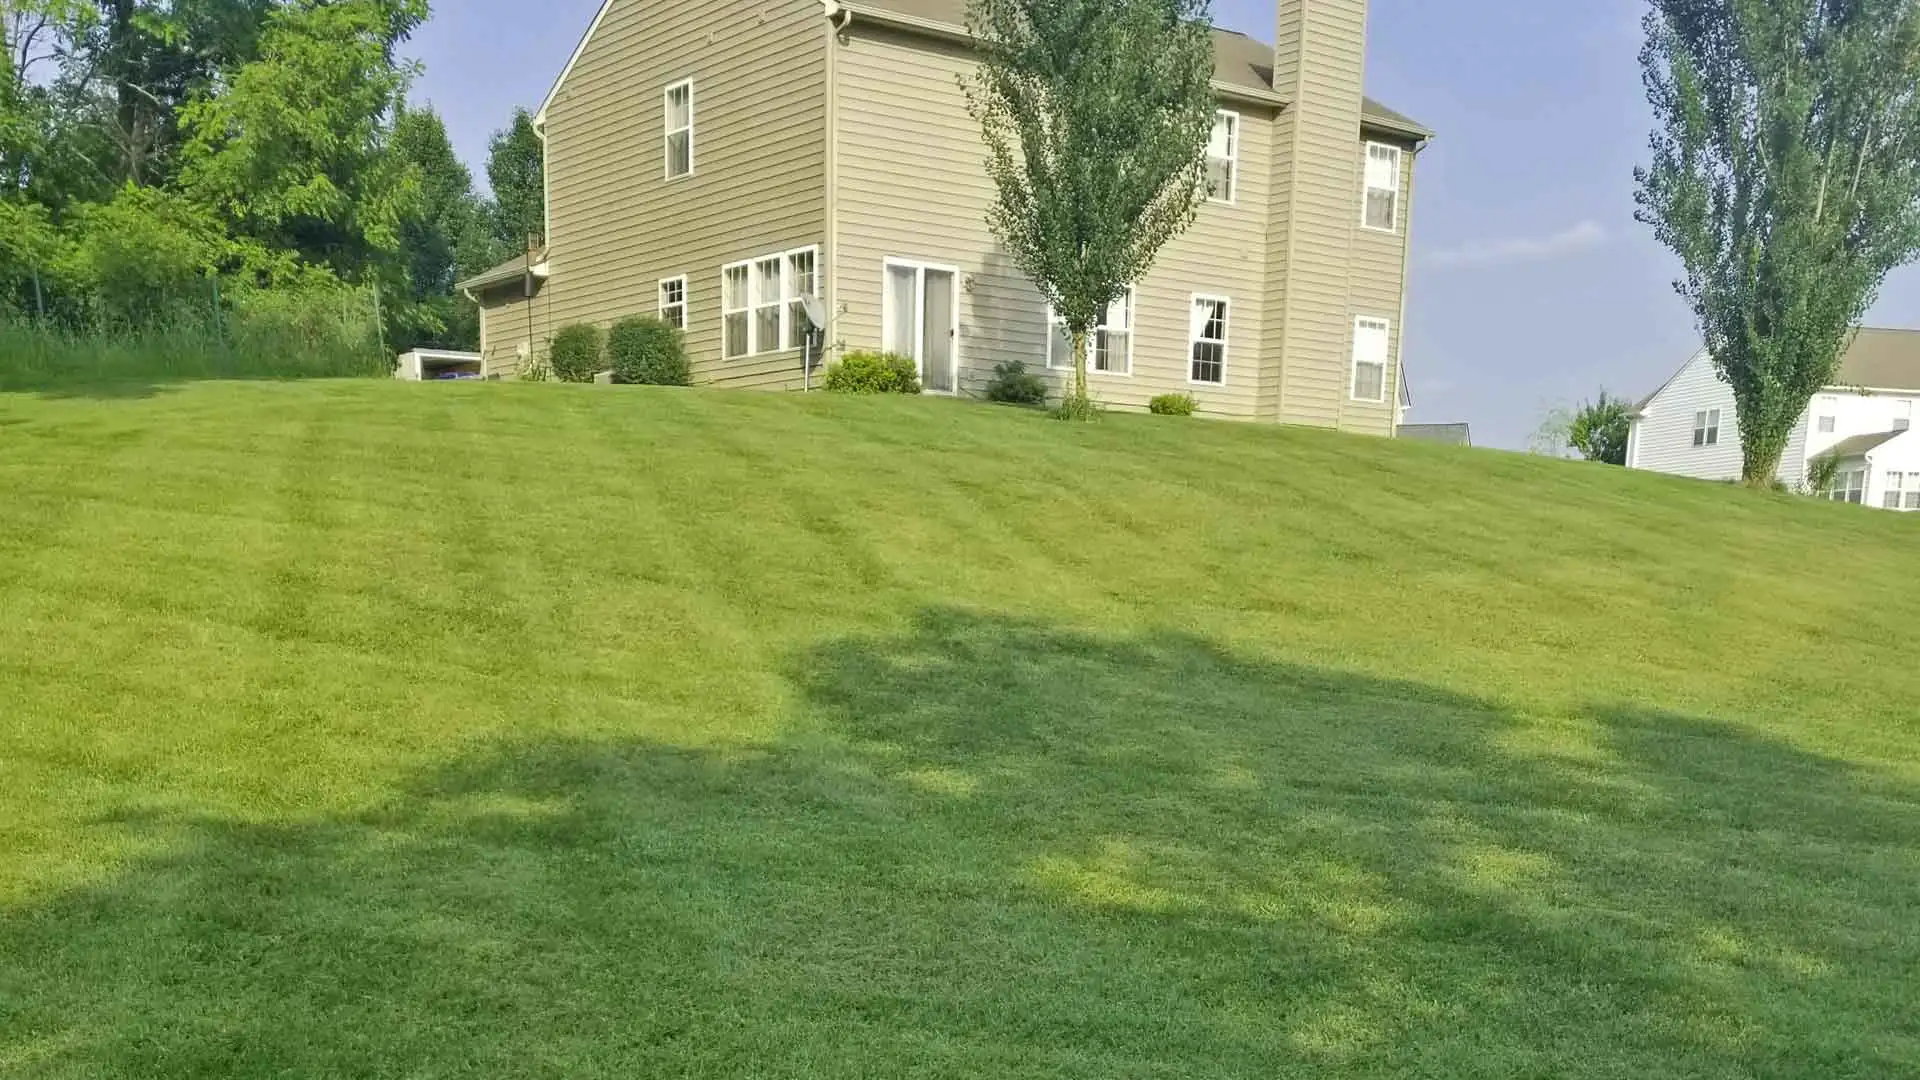 Mowing a residential lawn in Carmel, IN.